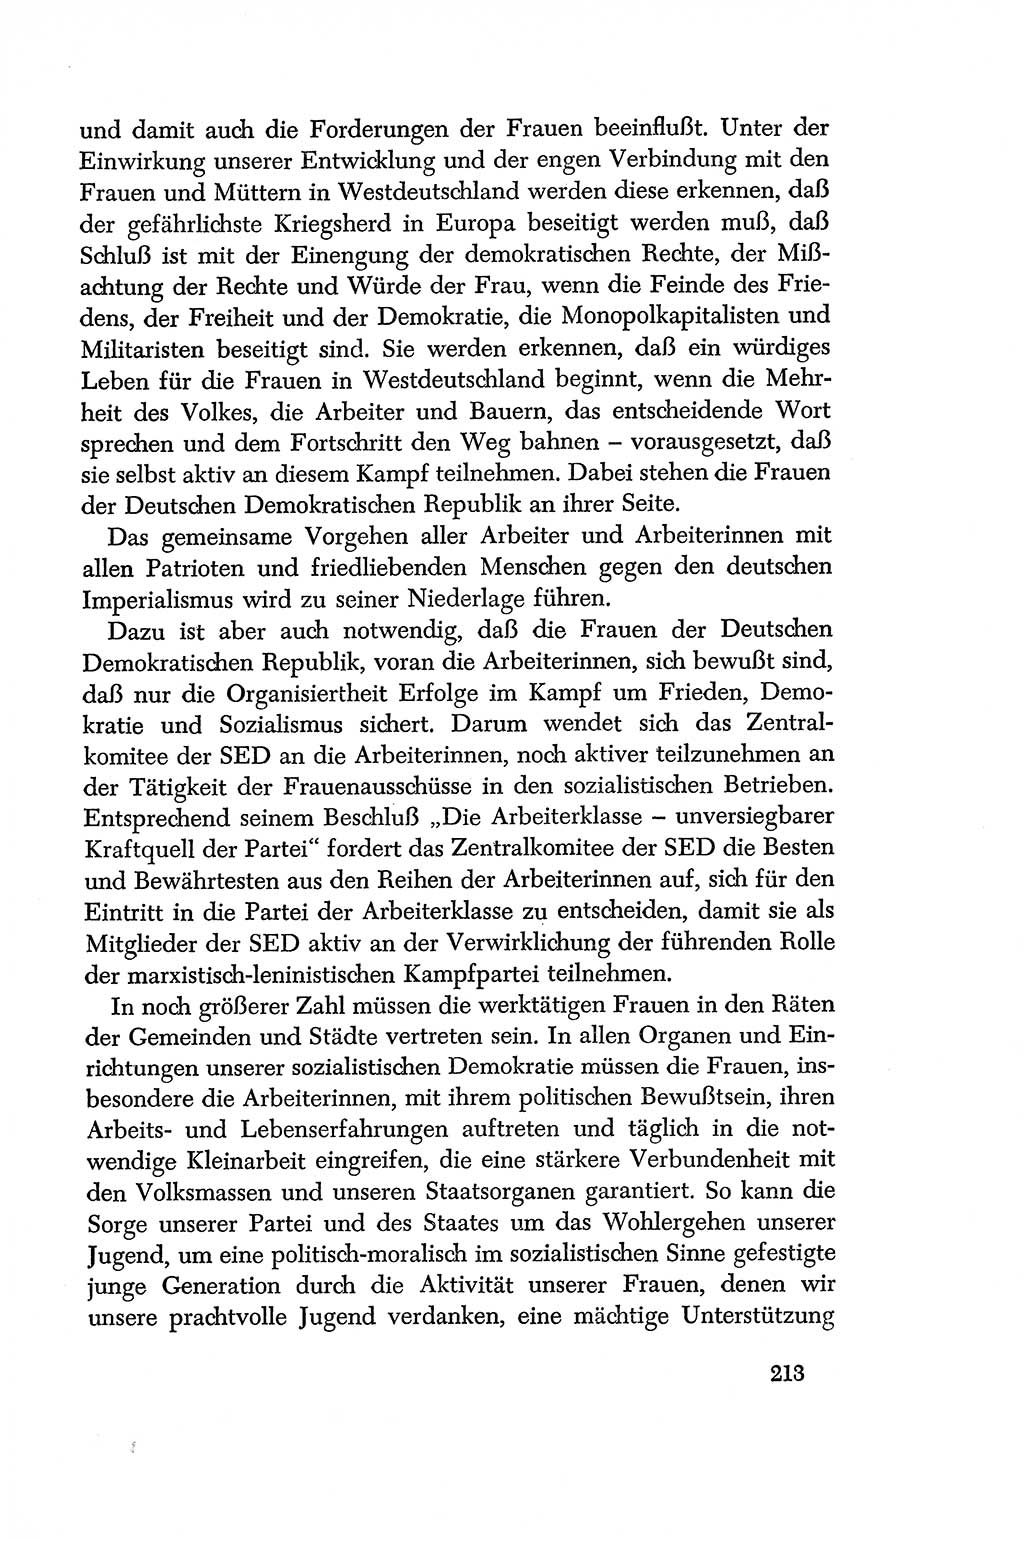 Dokumente der Sozialistischen Einheitspartei Deutschlands (SED) [Deutsche Demokratische Republik (DDR)] 1956-1957, Seite 213 (Dok. SED DDR 1956-1957, S. 213)